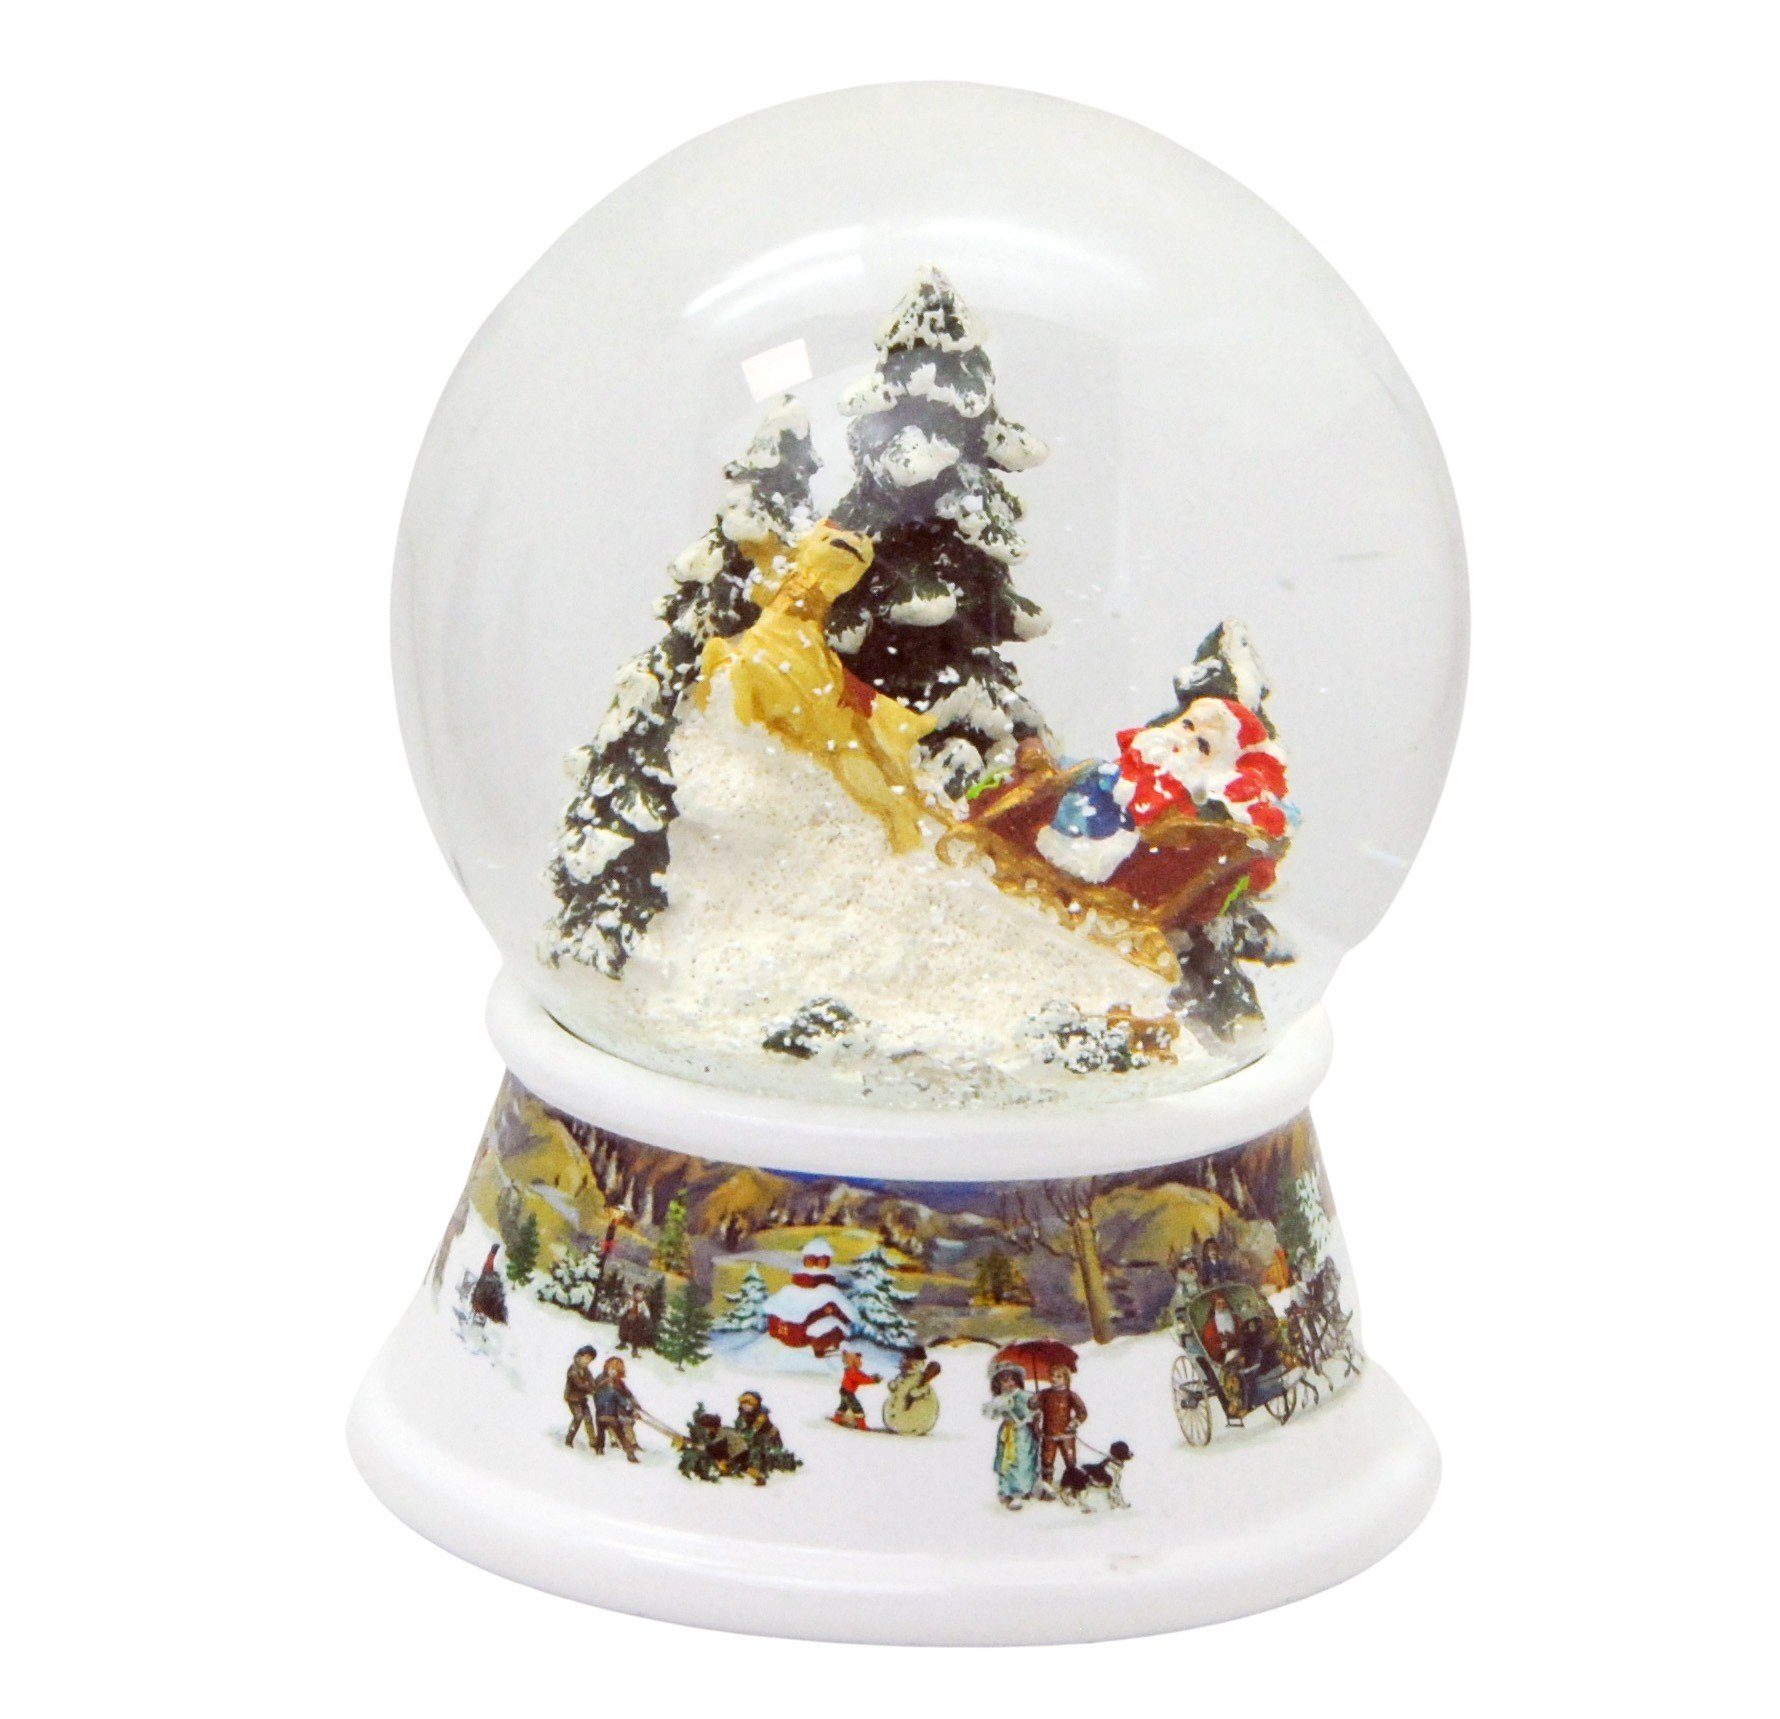 MINIUM-Collection Schneekugel Santa fährt auf Schlitten Classic Line Spieluhr 100mm breit